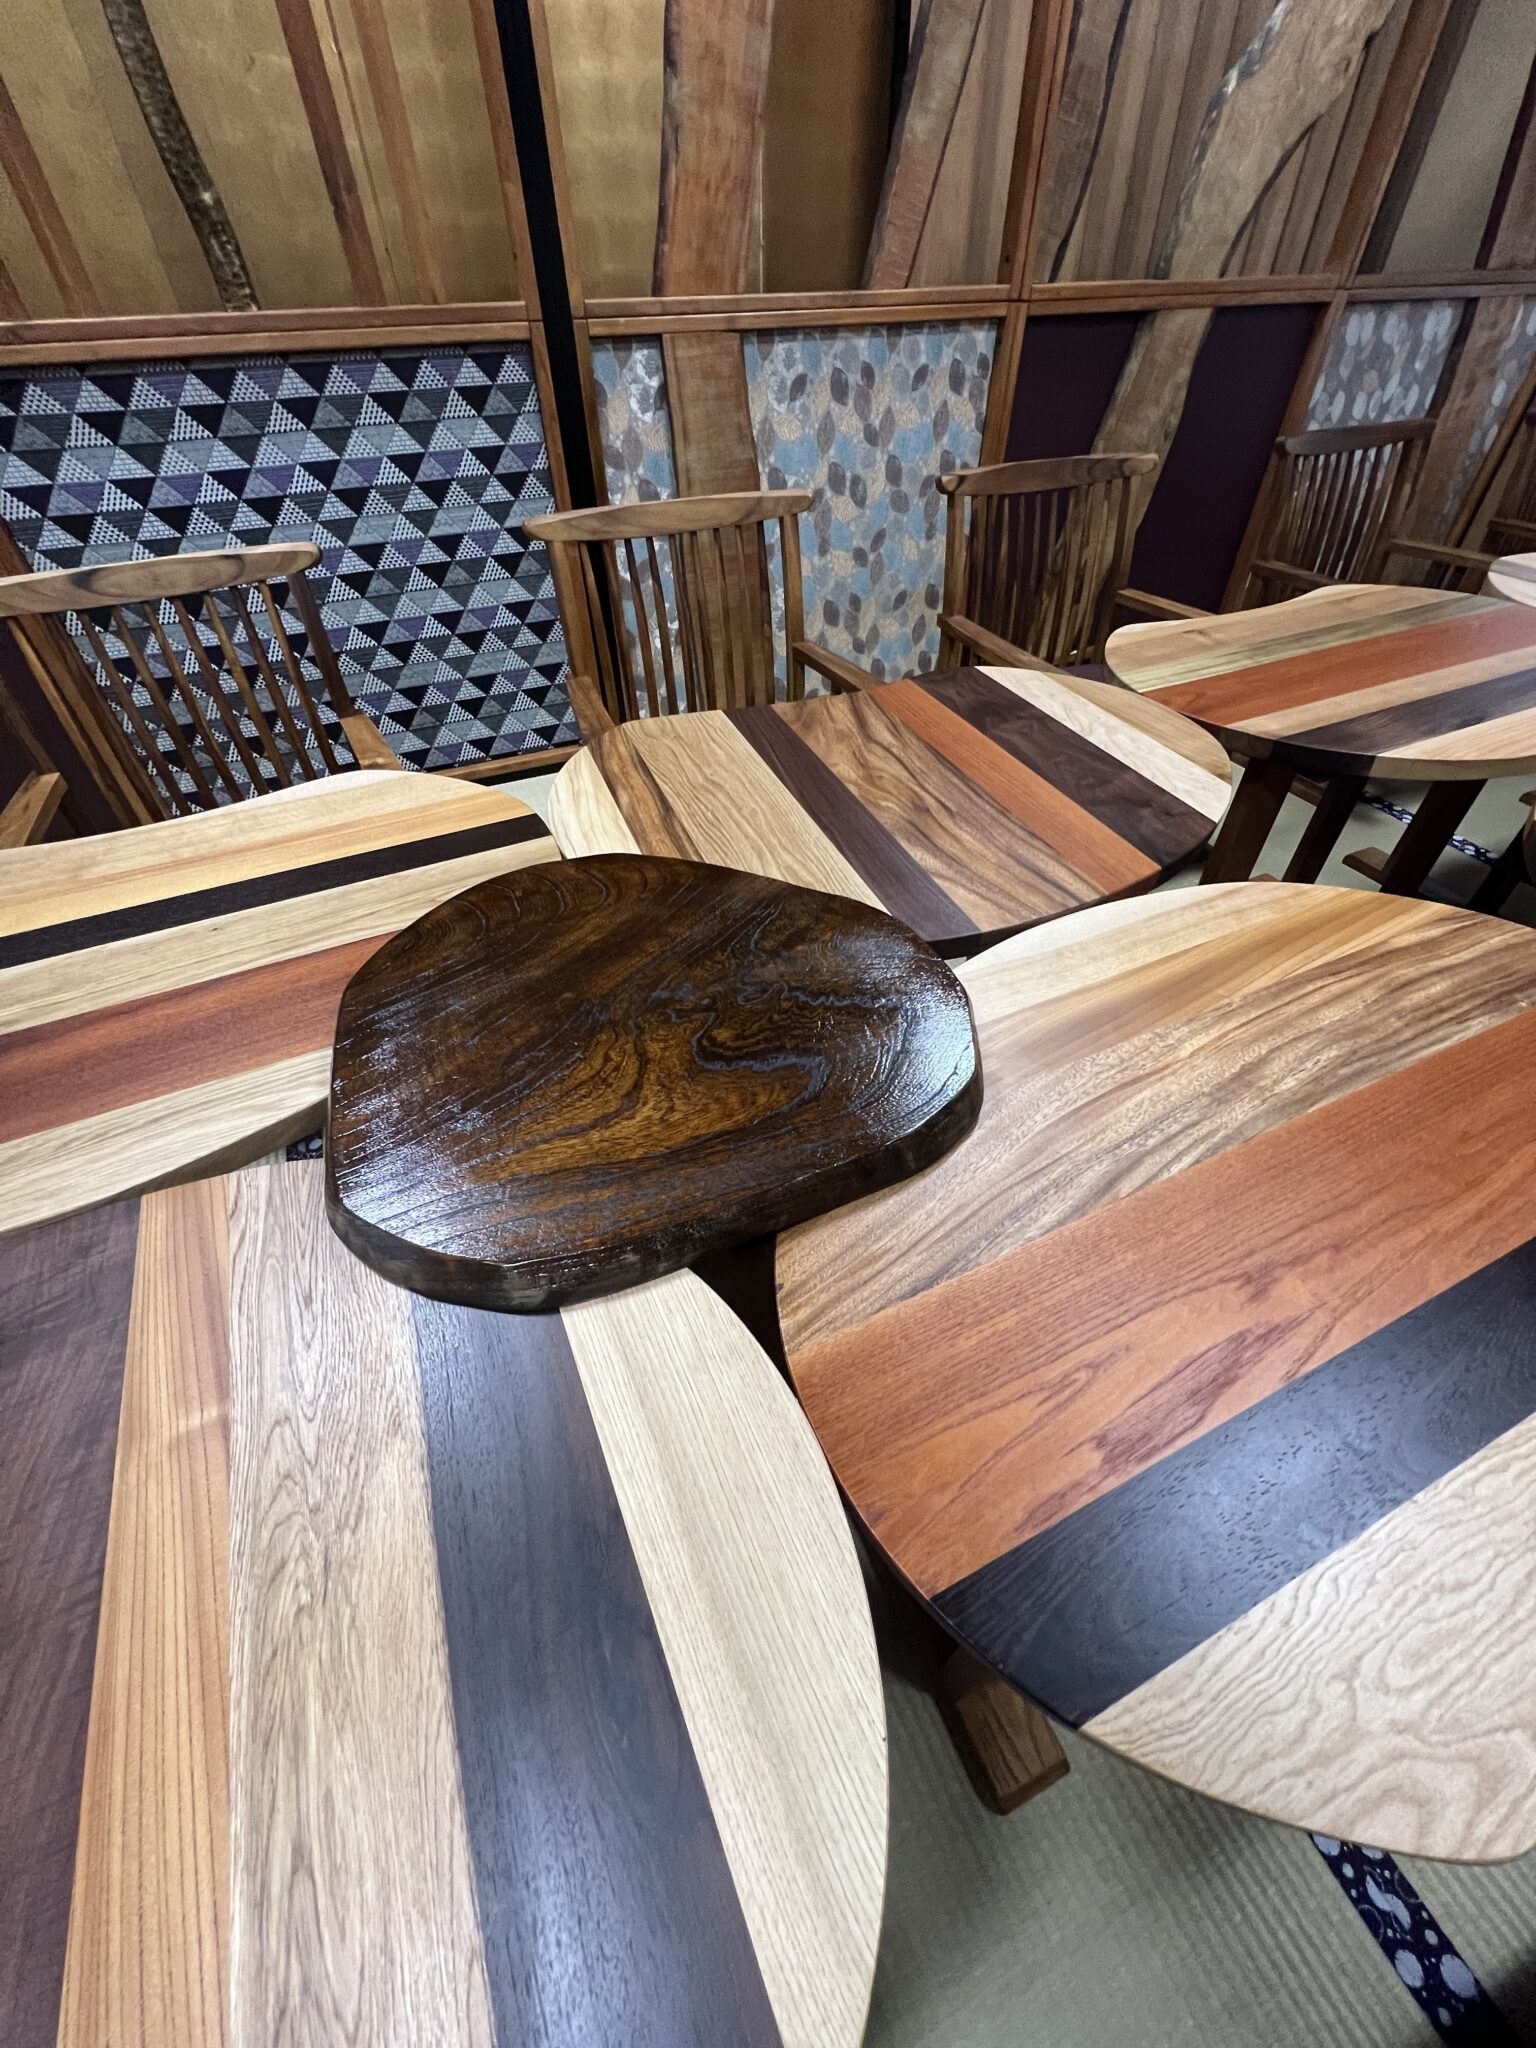 テーブルとテーブルの間には、欅の板も。テーブルに使われている欅に比べ、塗装を施して渋い色味になっています。